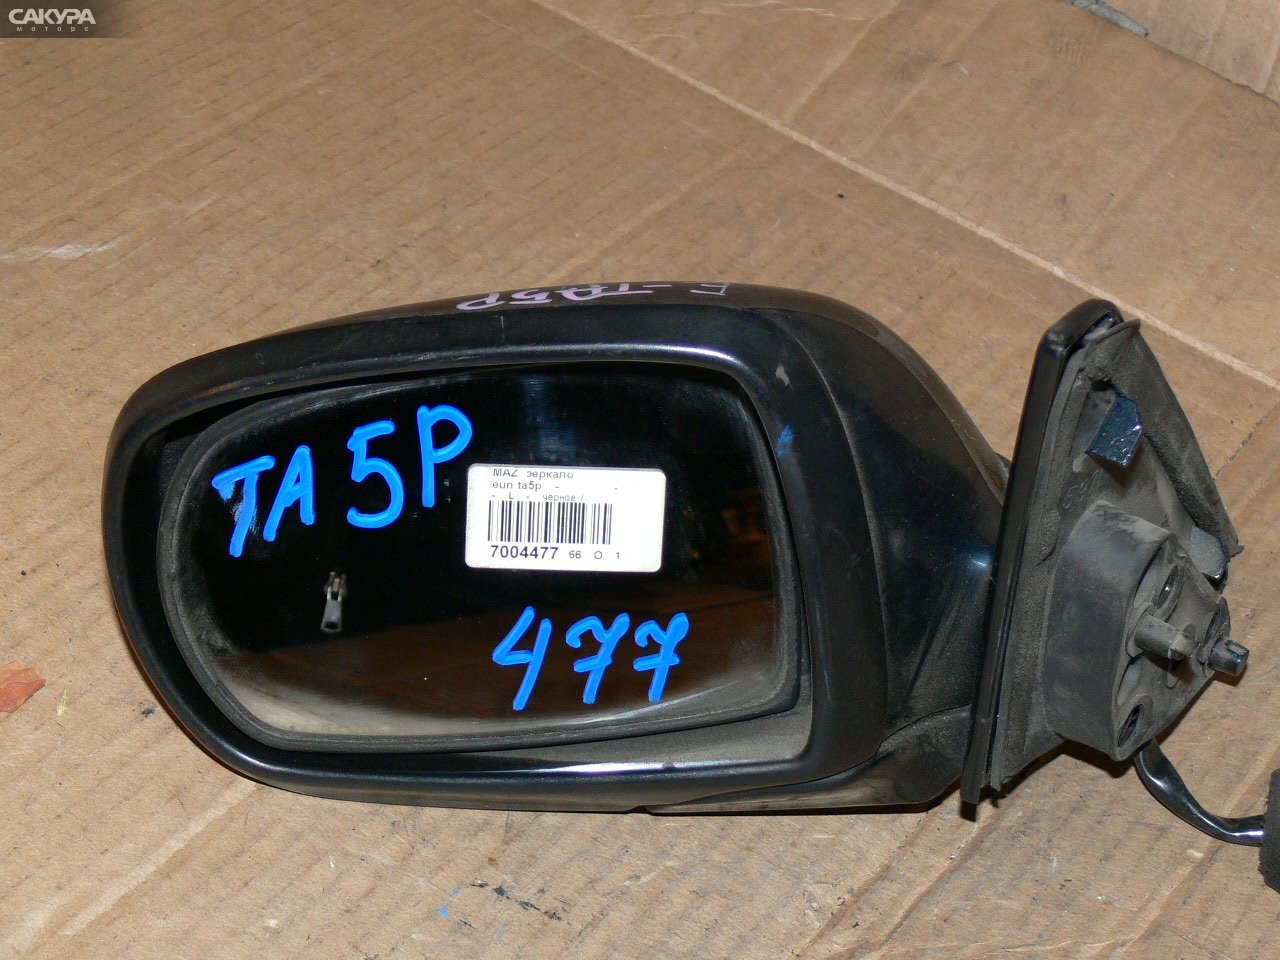 Зеркало боковое левое Mazda Eunos 800 TA5P: купить в Сакура Иркутск.